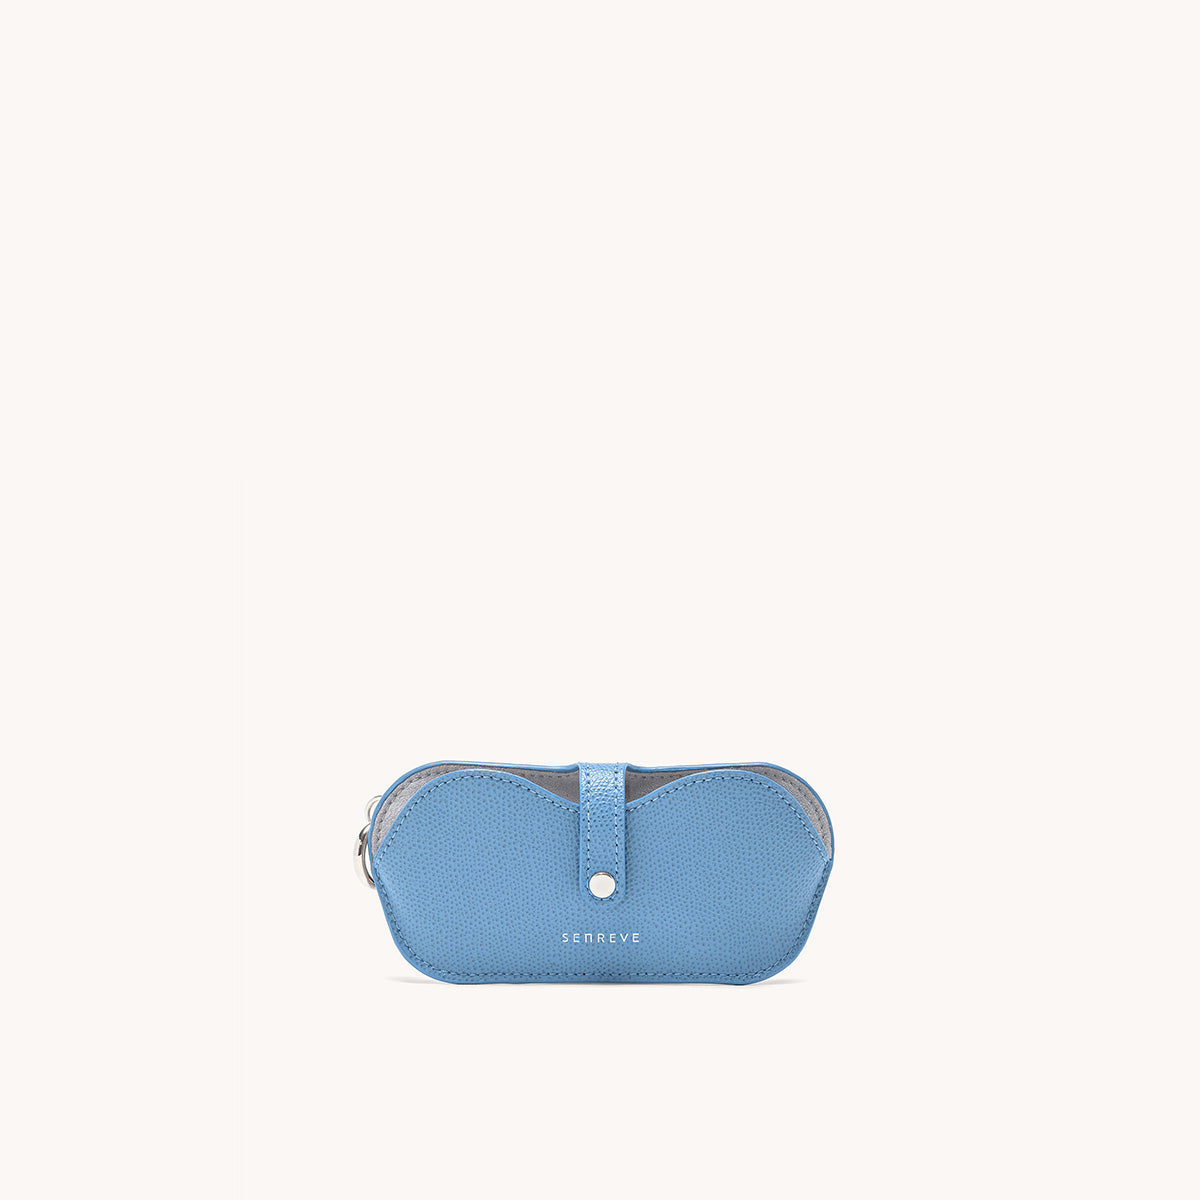 Senreve Coda Belt Bag, blue or beige, silver color hardware NWT